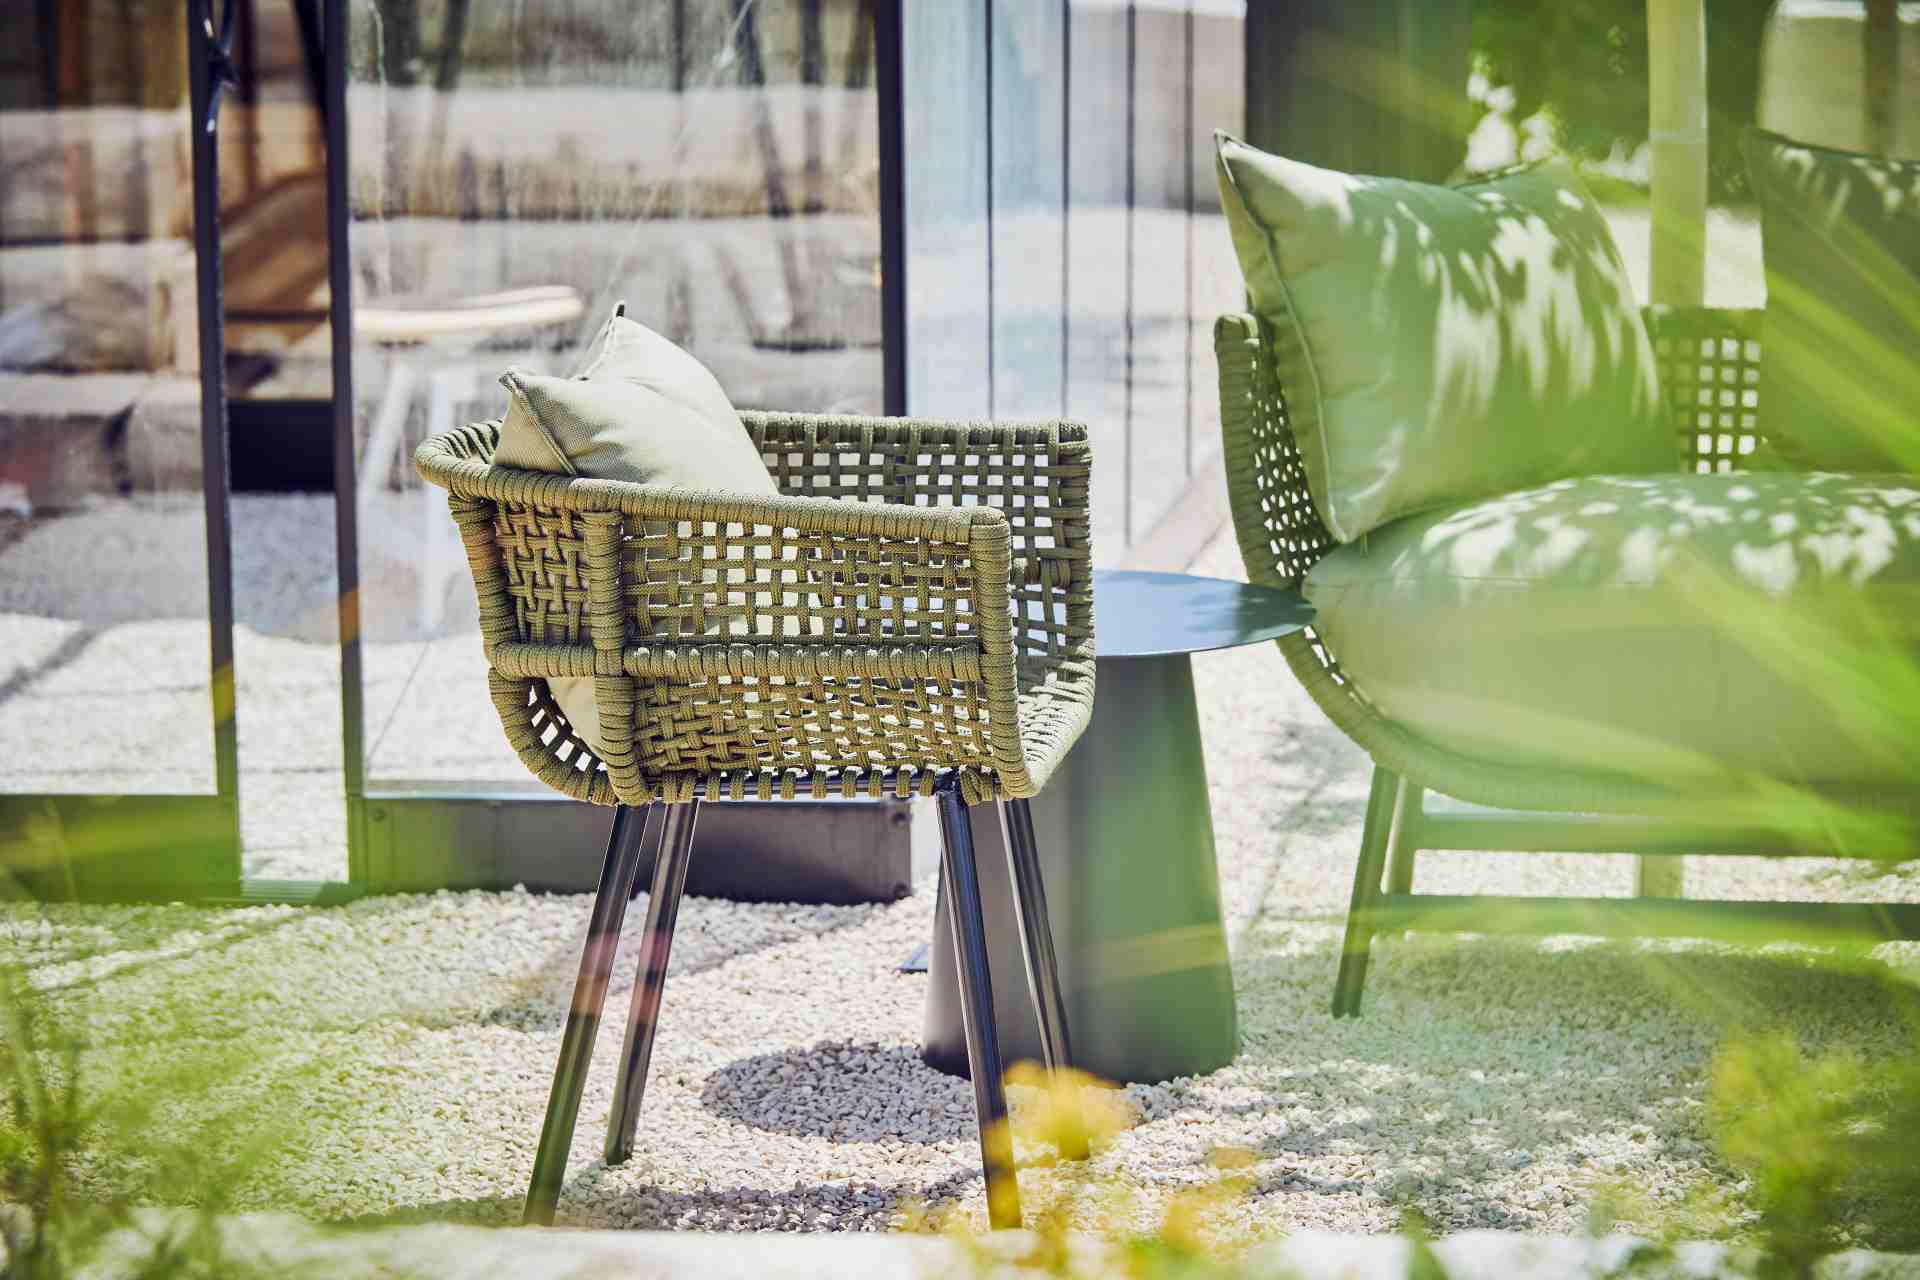 Bequemes Rückenkissen für den Gartenstuhl Saku der Marke Jan Kurtz. In der Farbe Olive. Outdoor geeignet.